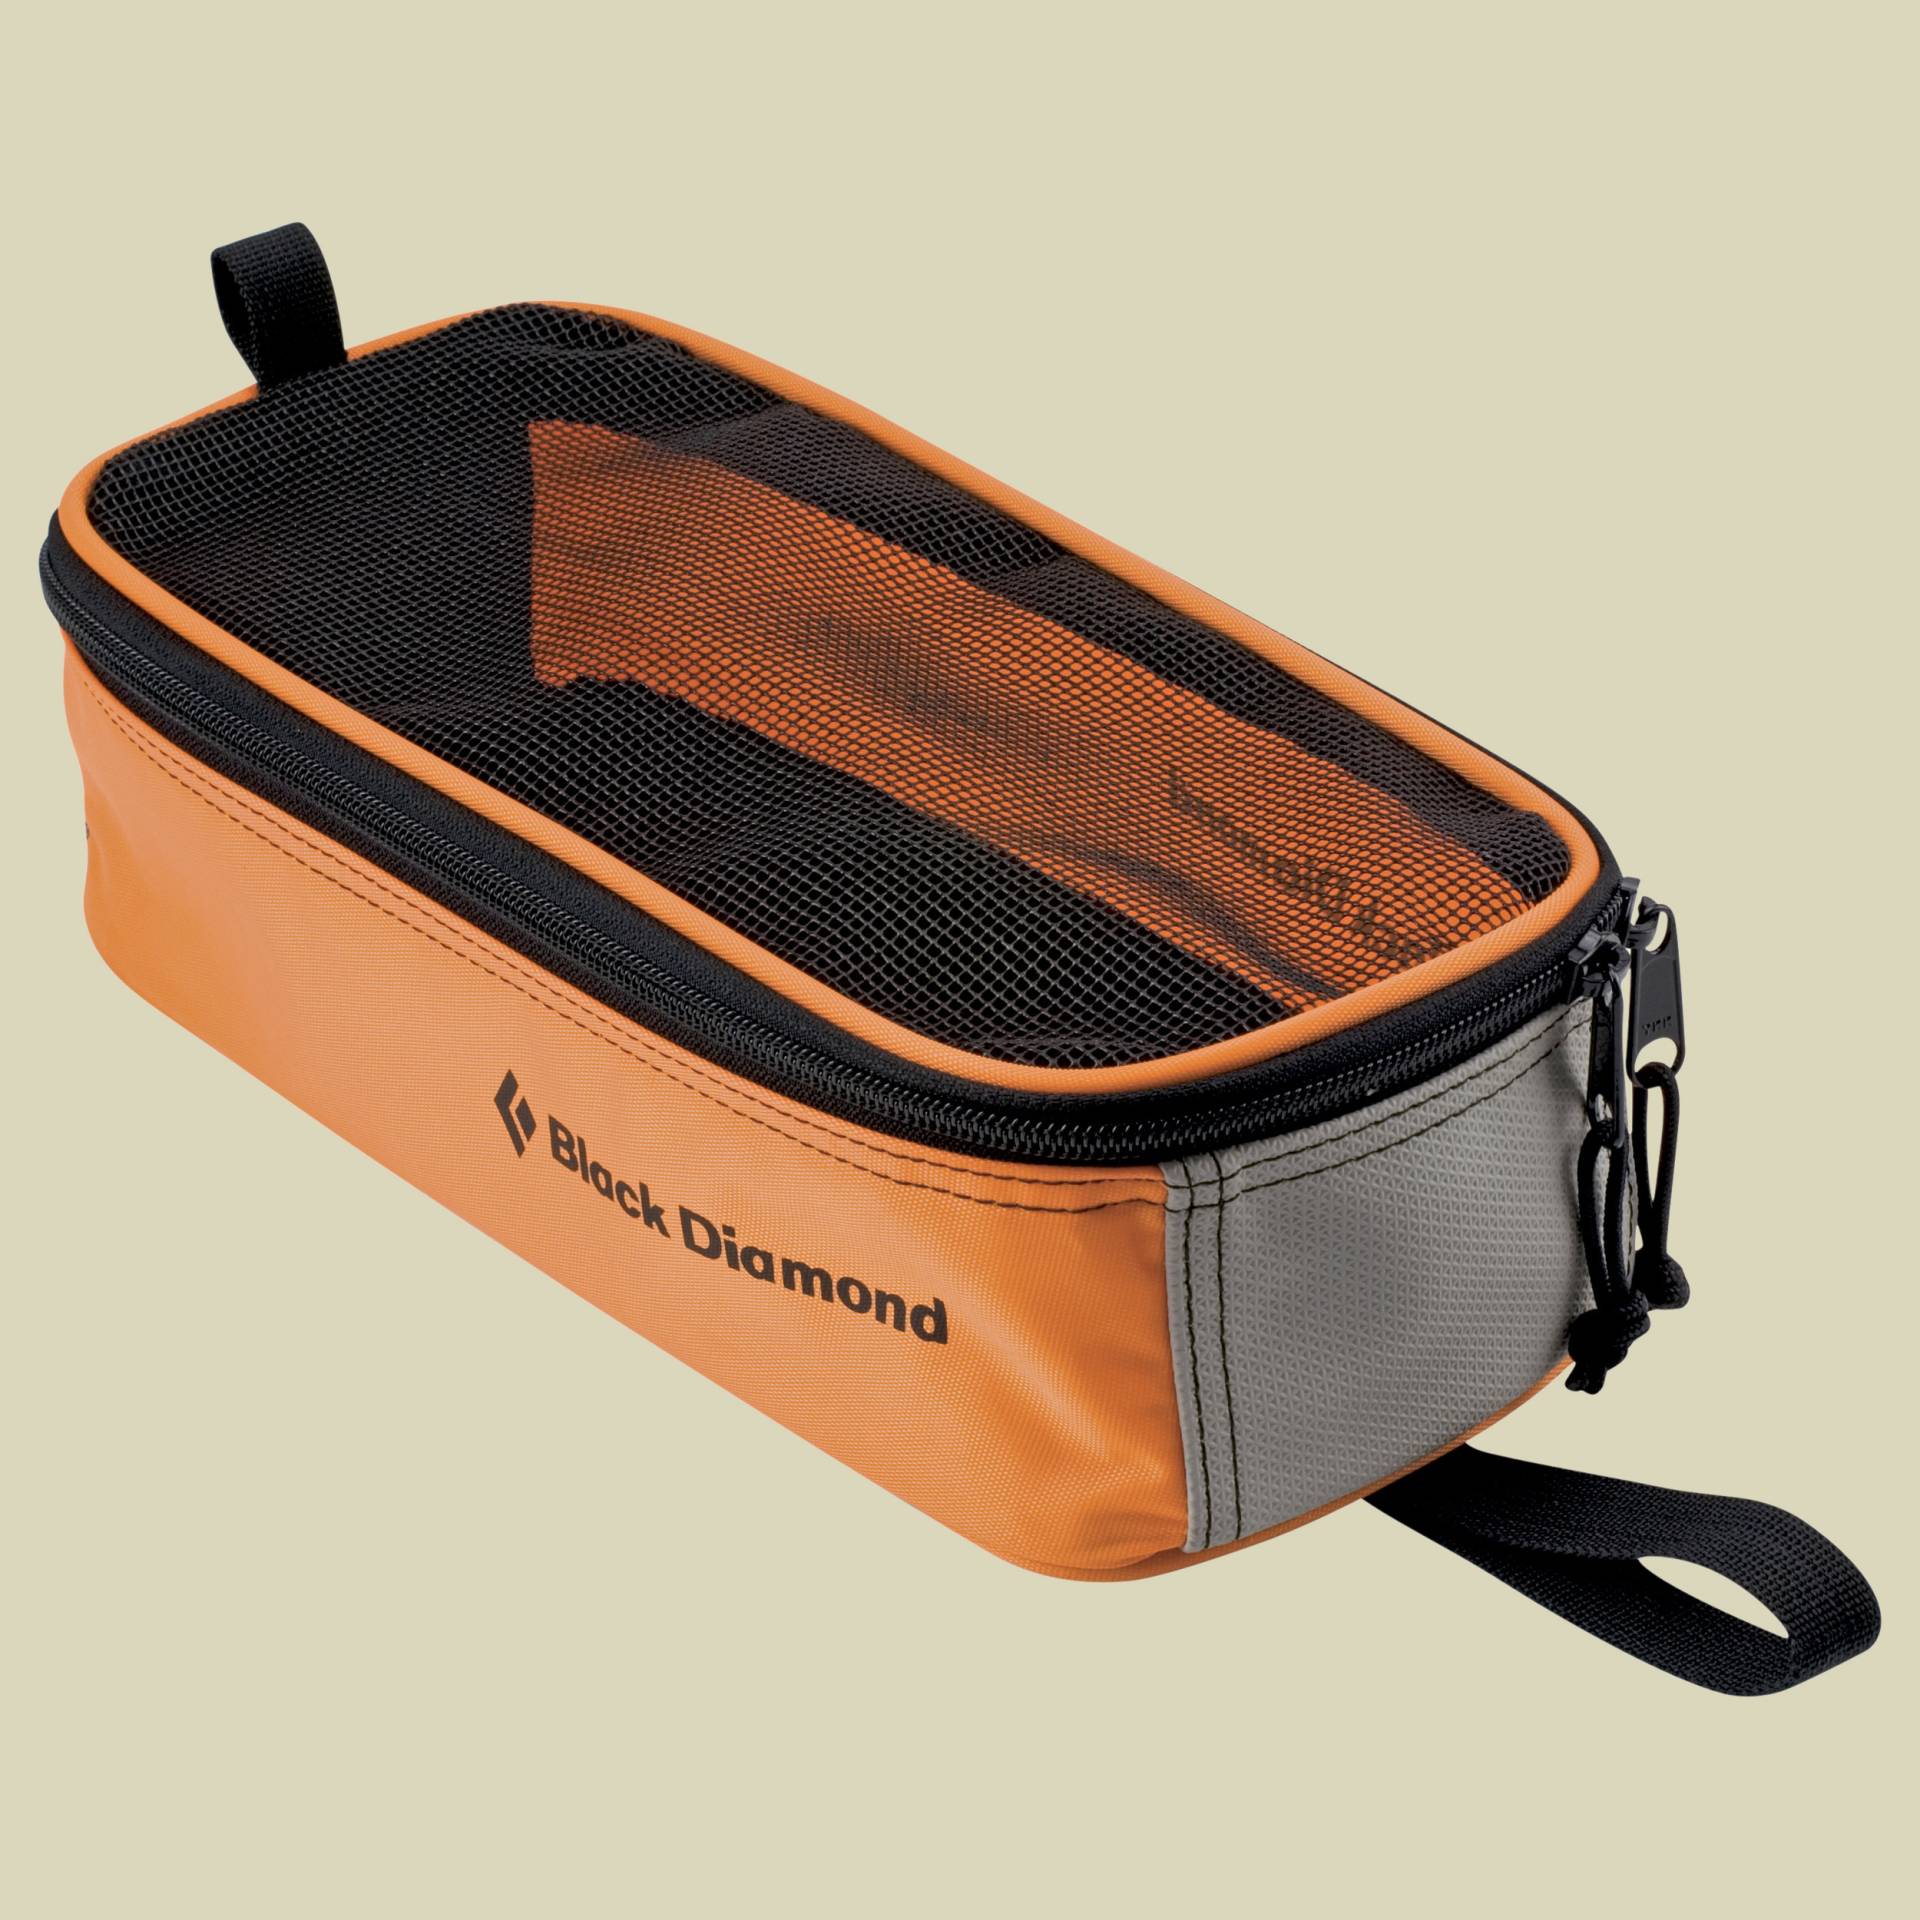 Black Diamond Crampon Bag Steigeisentasche  orange von Black Diamond